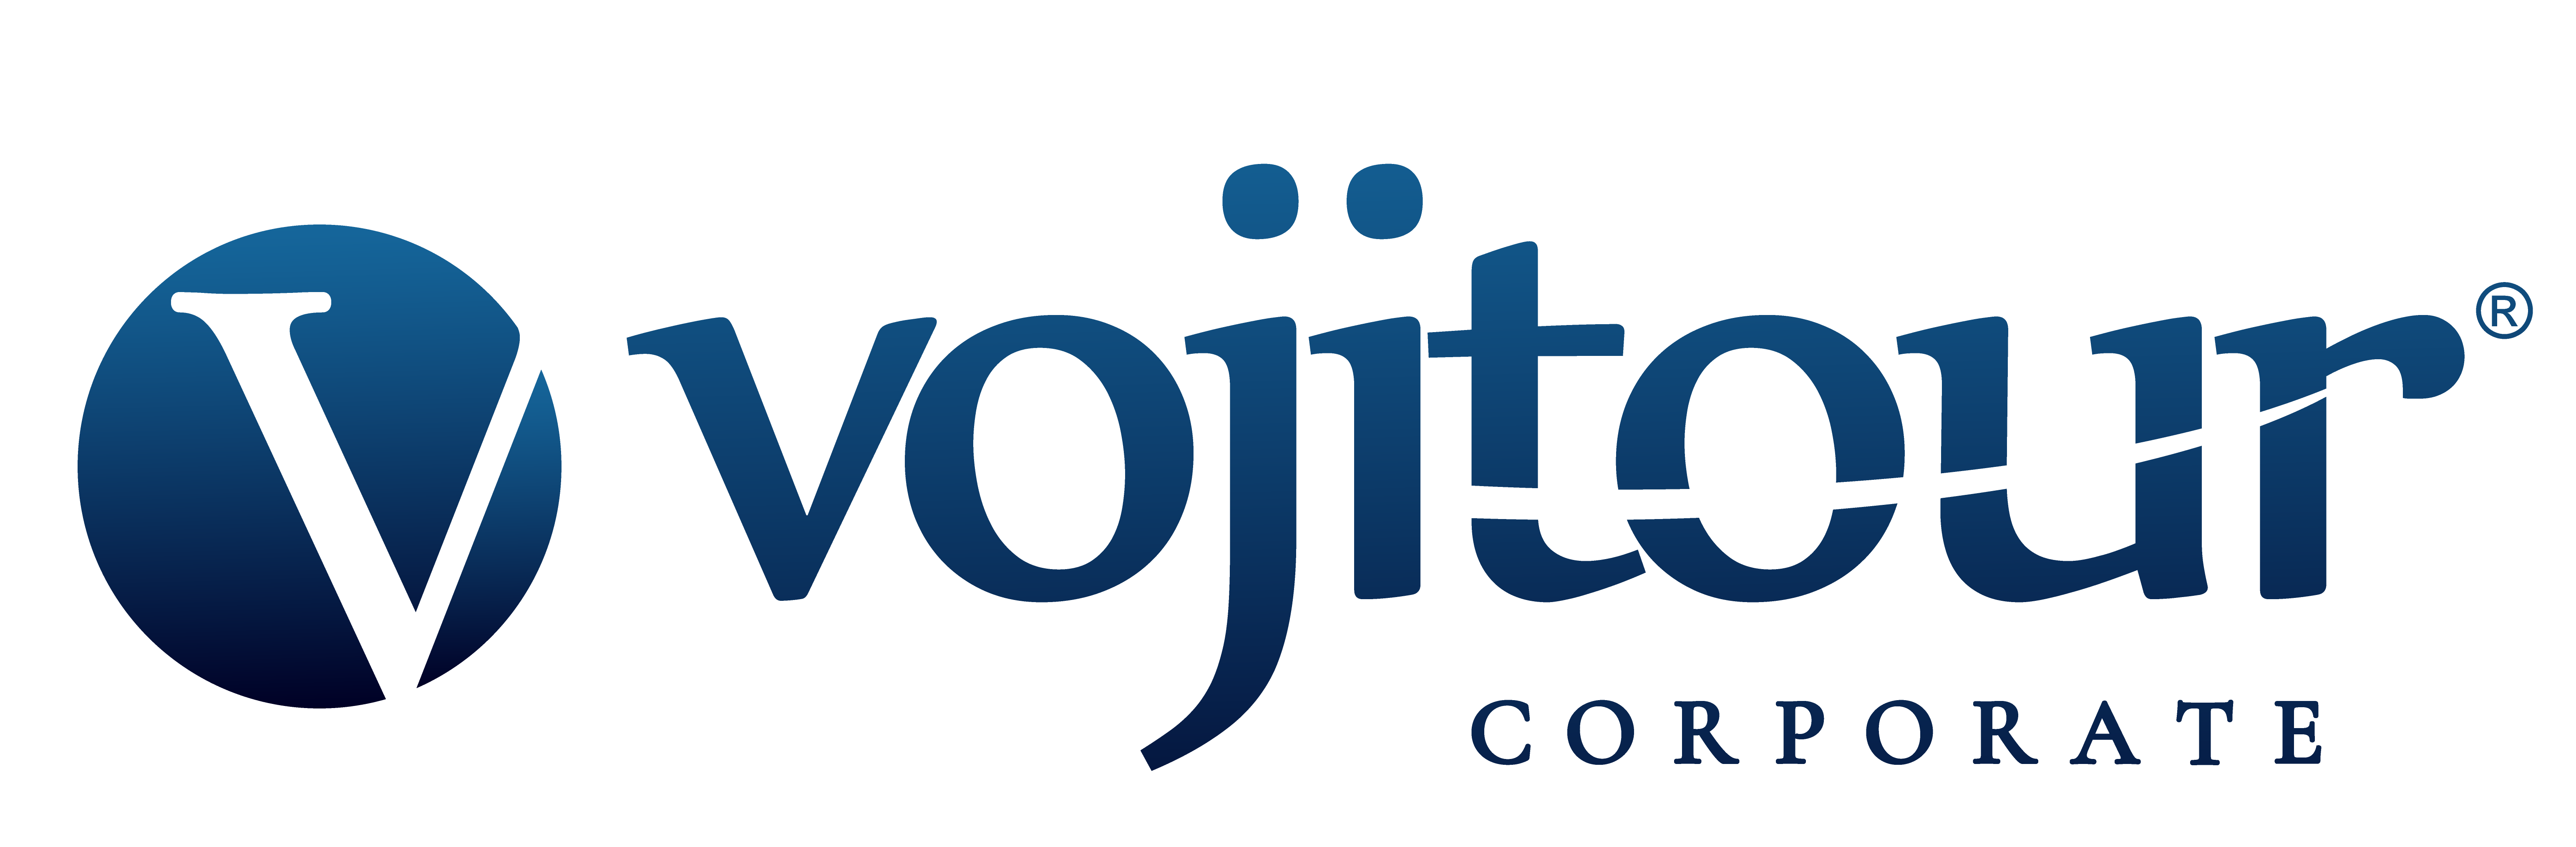 Vojitour Corporate